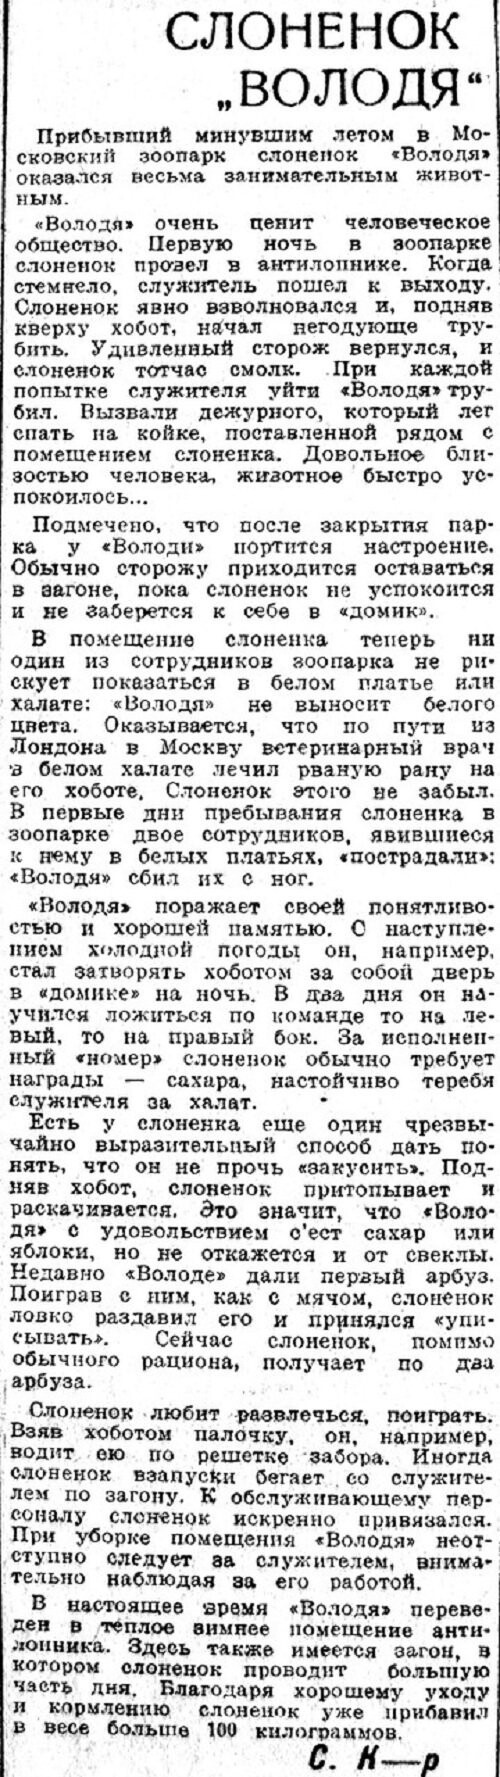 «Вечерняя Москва», 26 октября 1936 г.